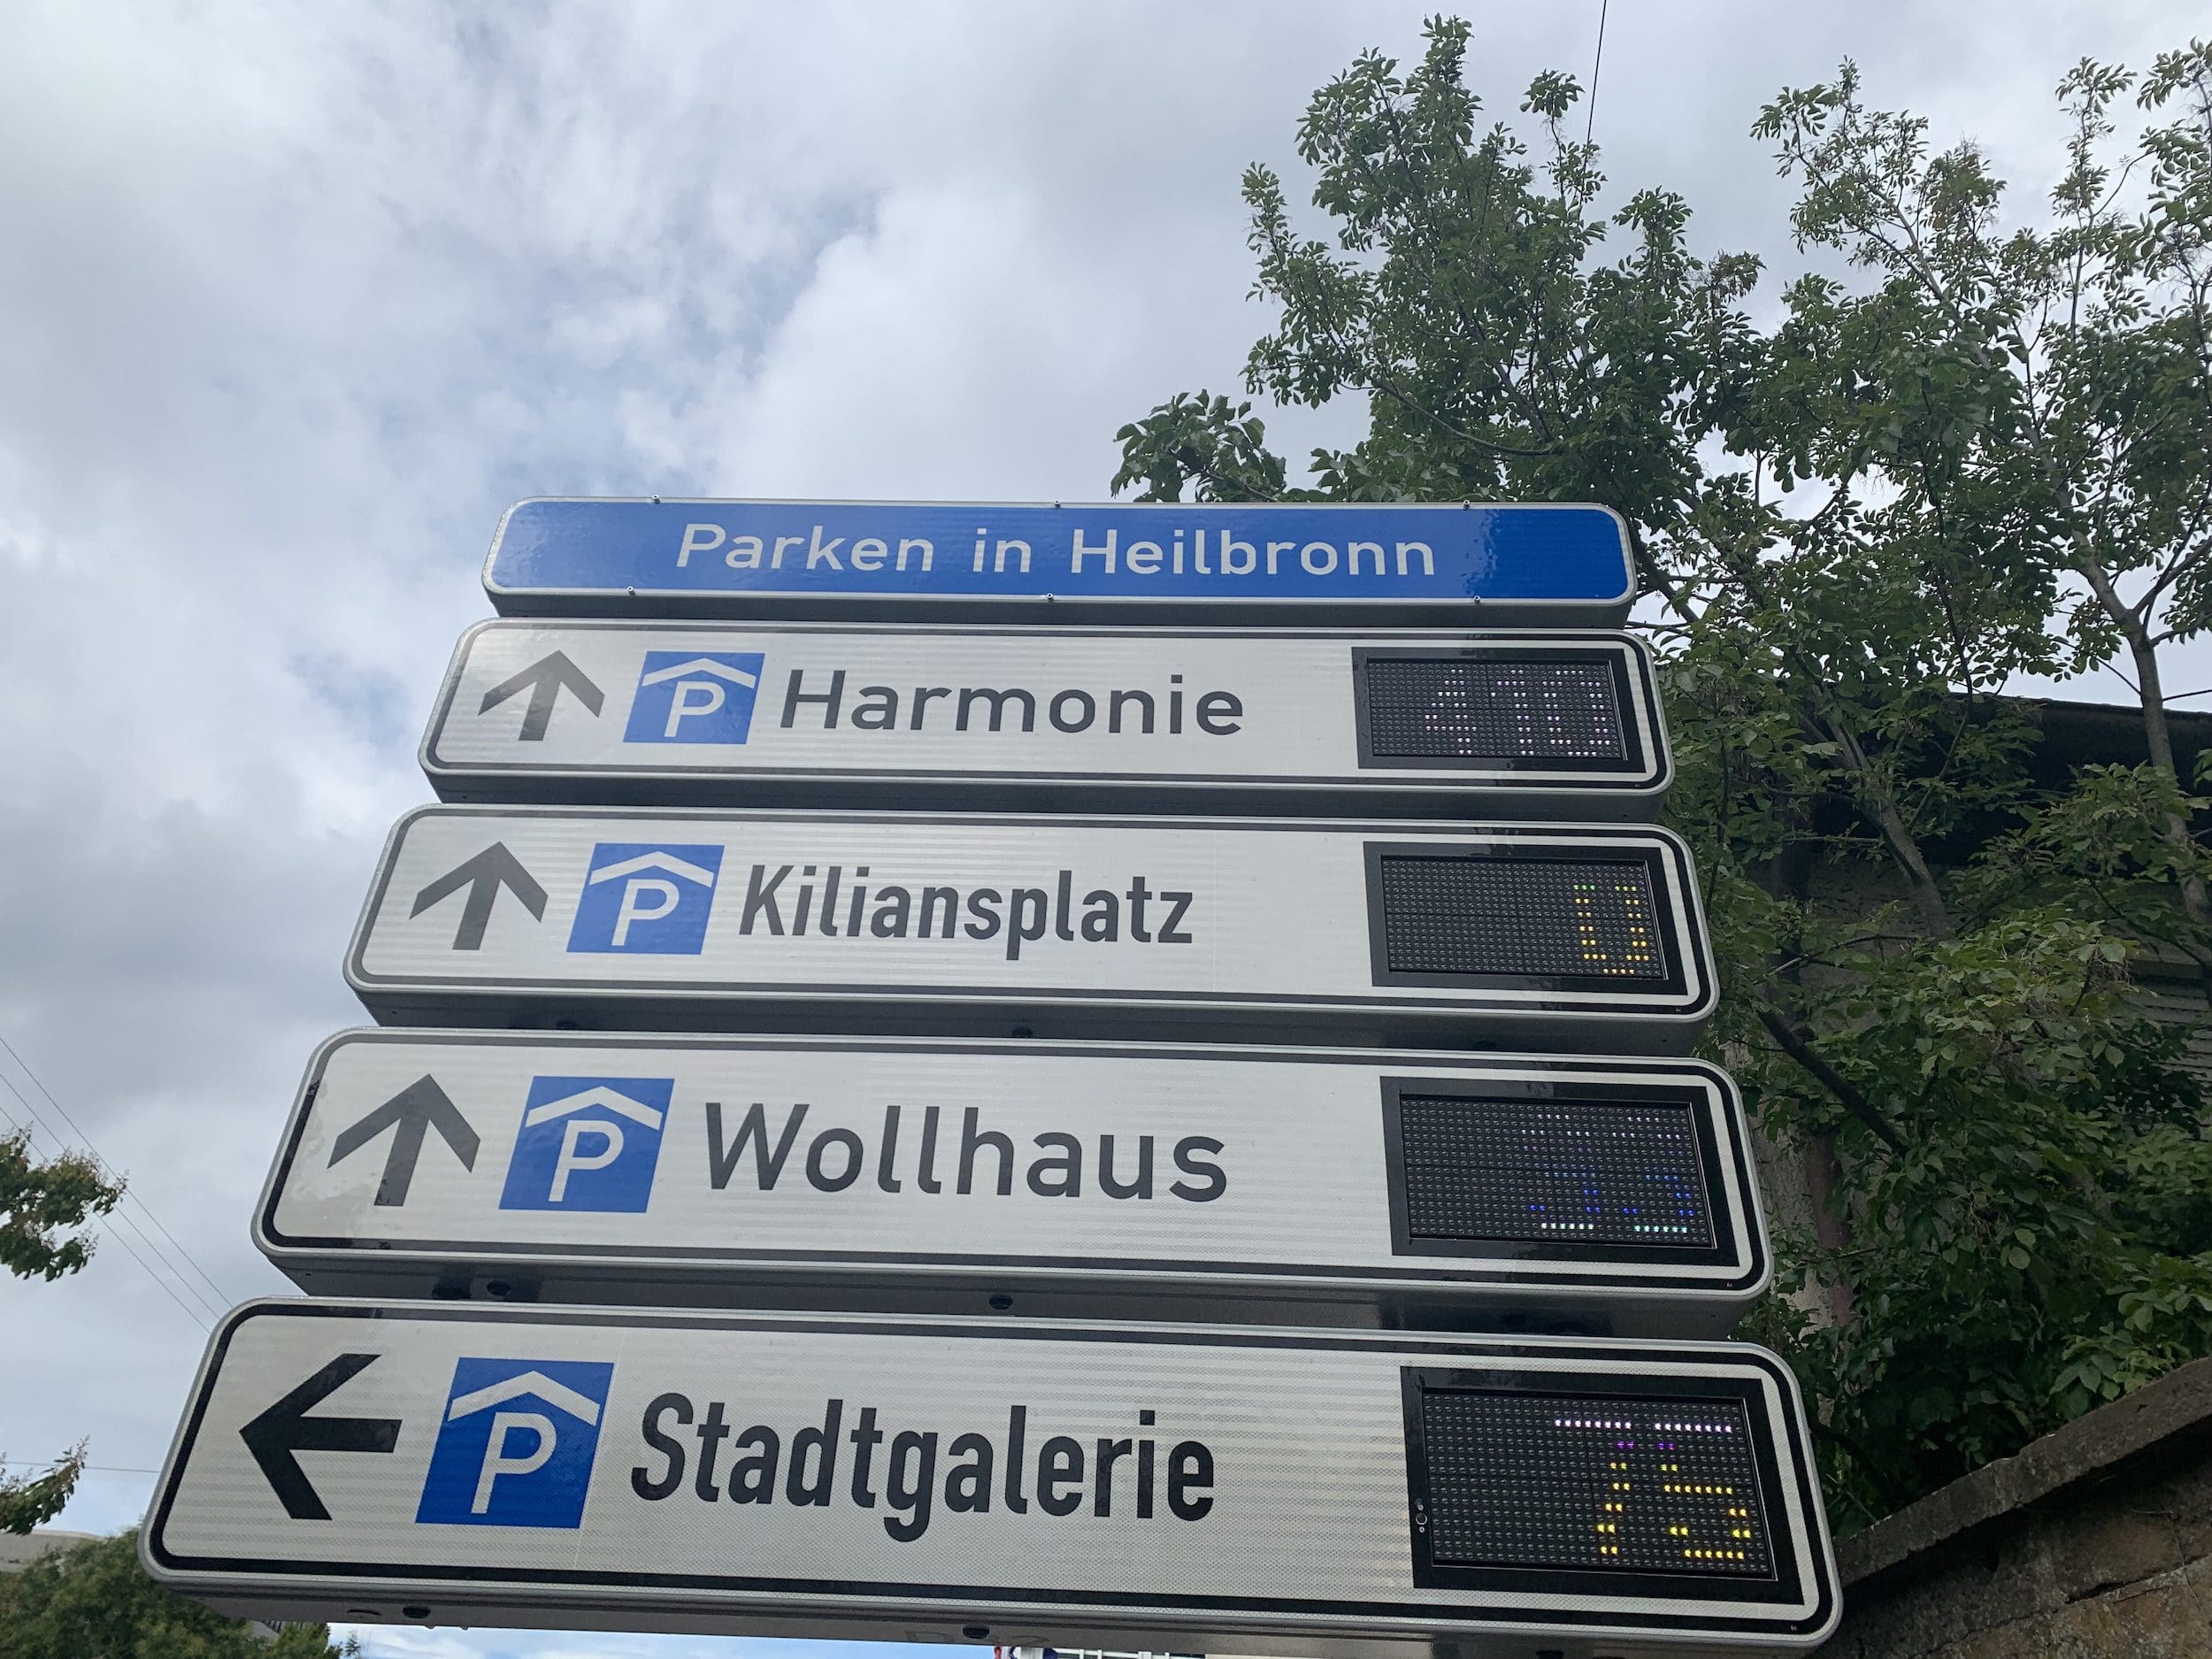 Parken in Heilbronn